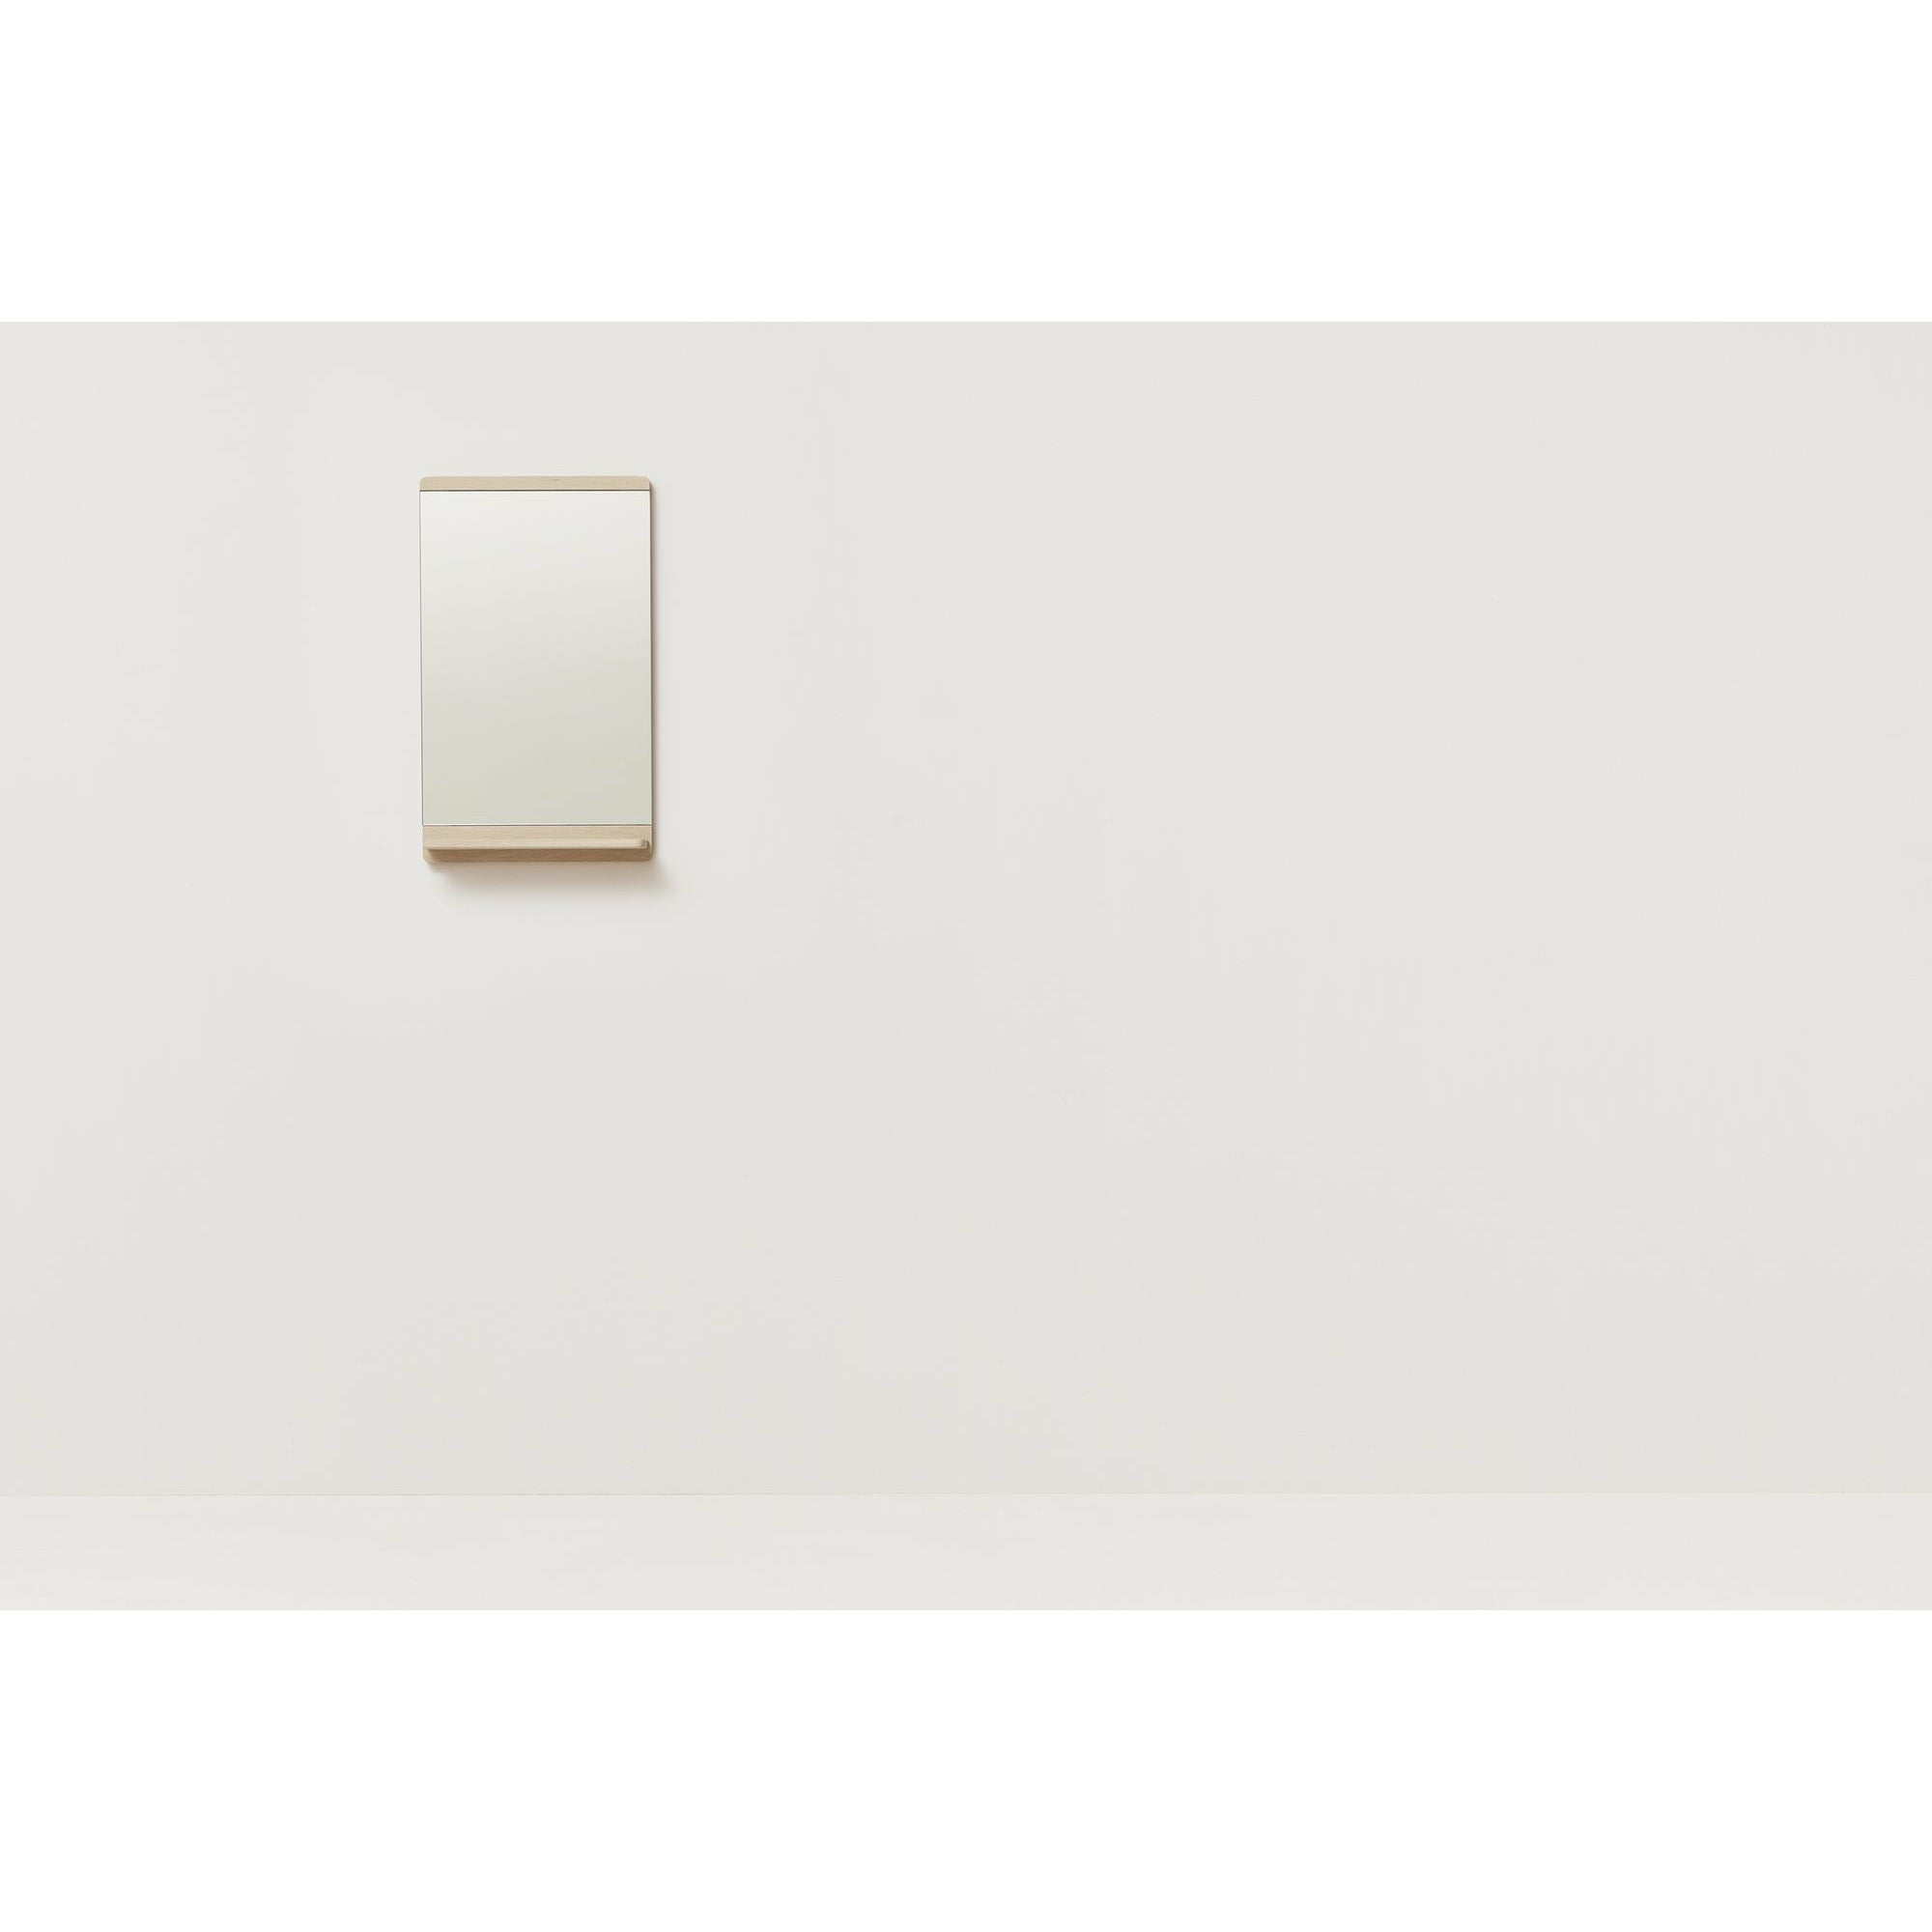 形式和完善的边缘壁镜。白橡木